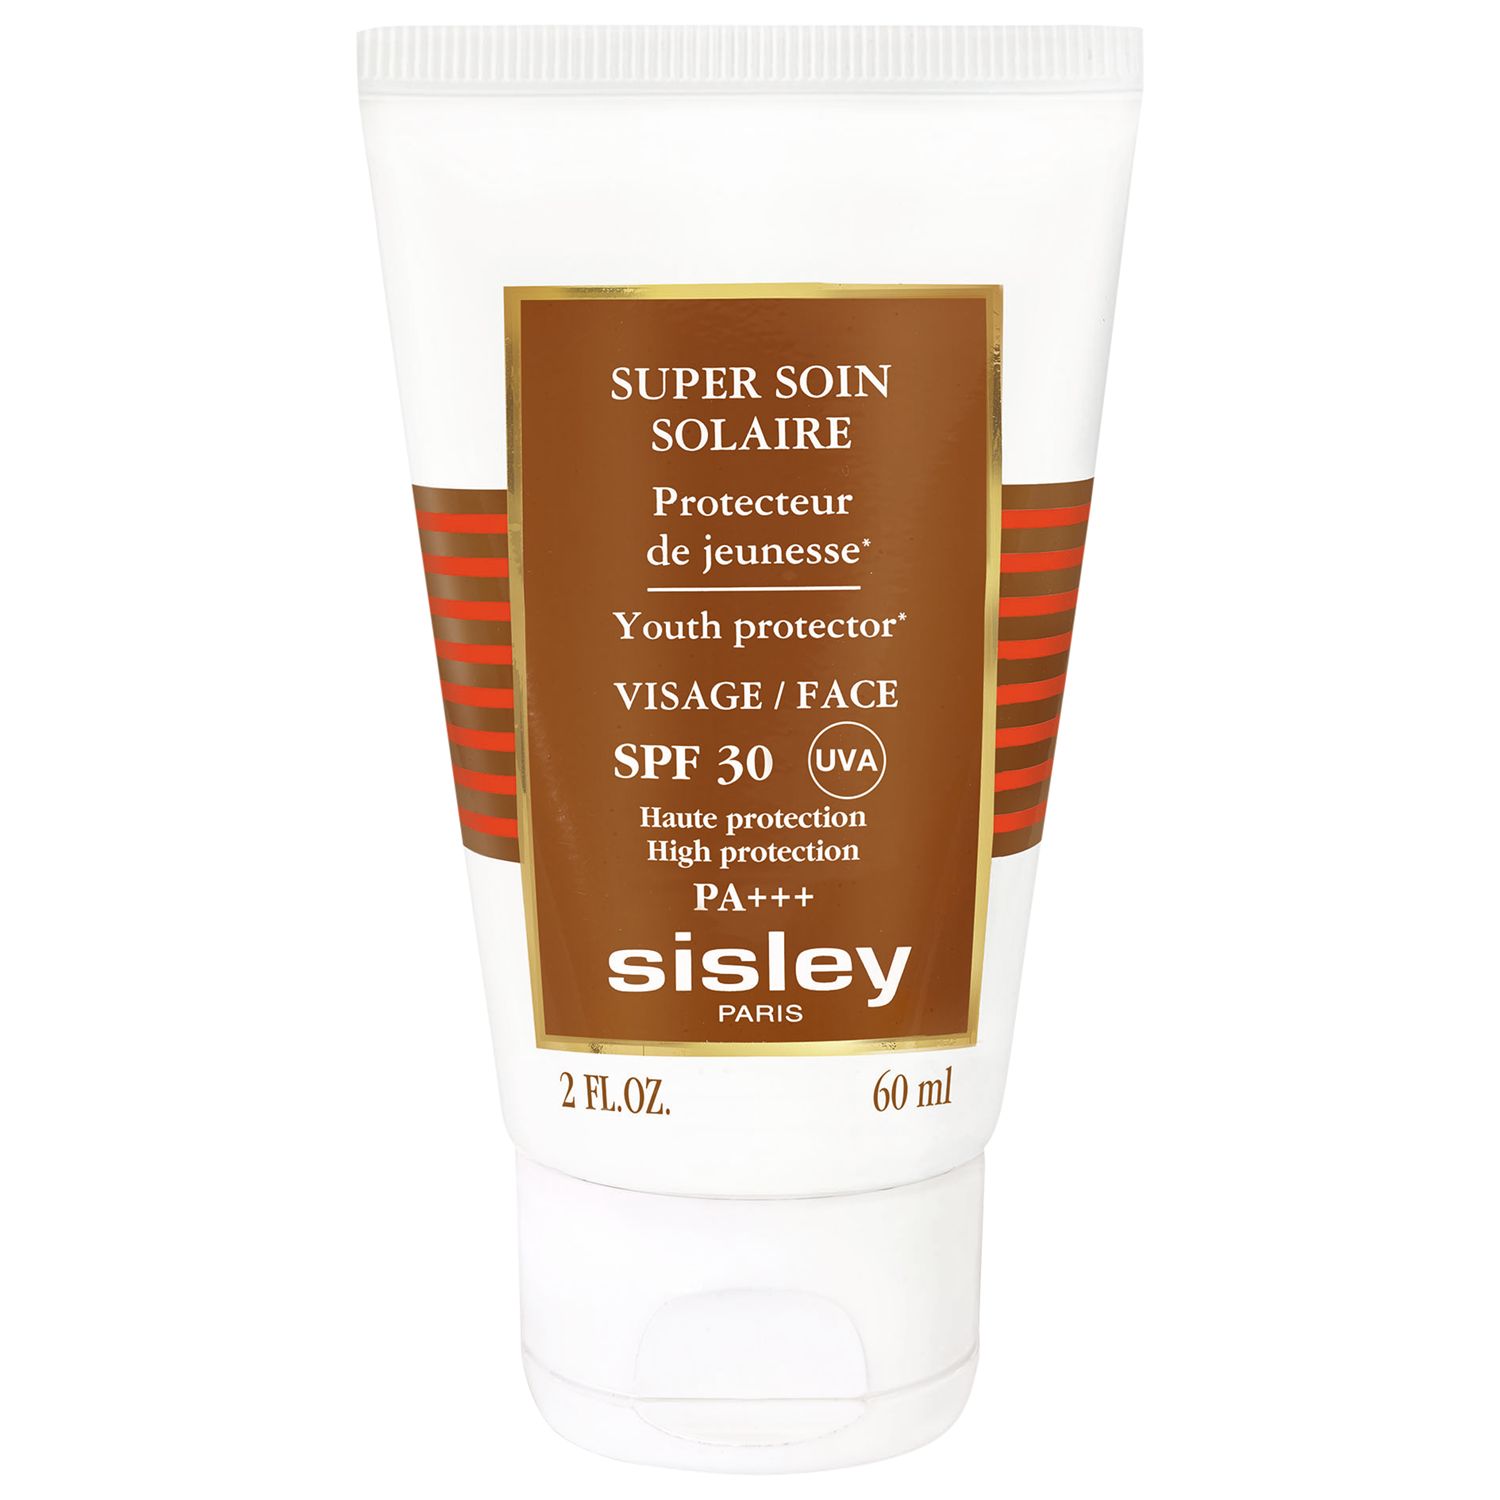 Sisley-Paris Super Soin Solaire Facial Sun Care SPF 30, 60ml 1